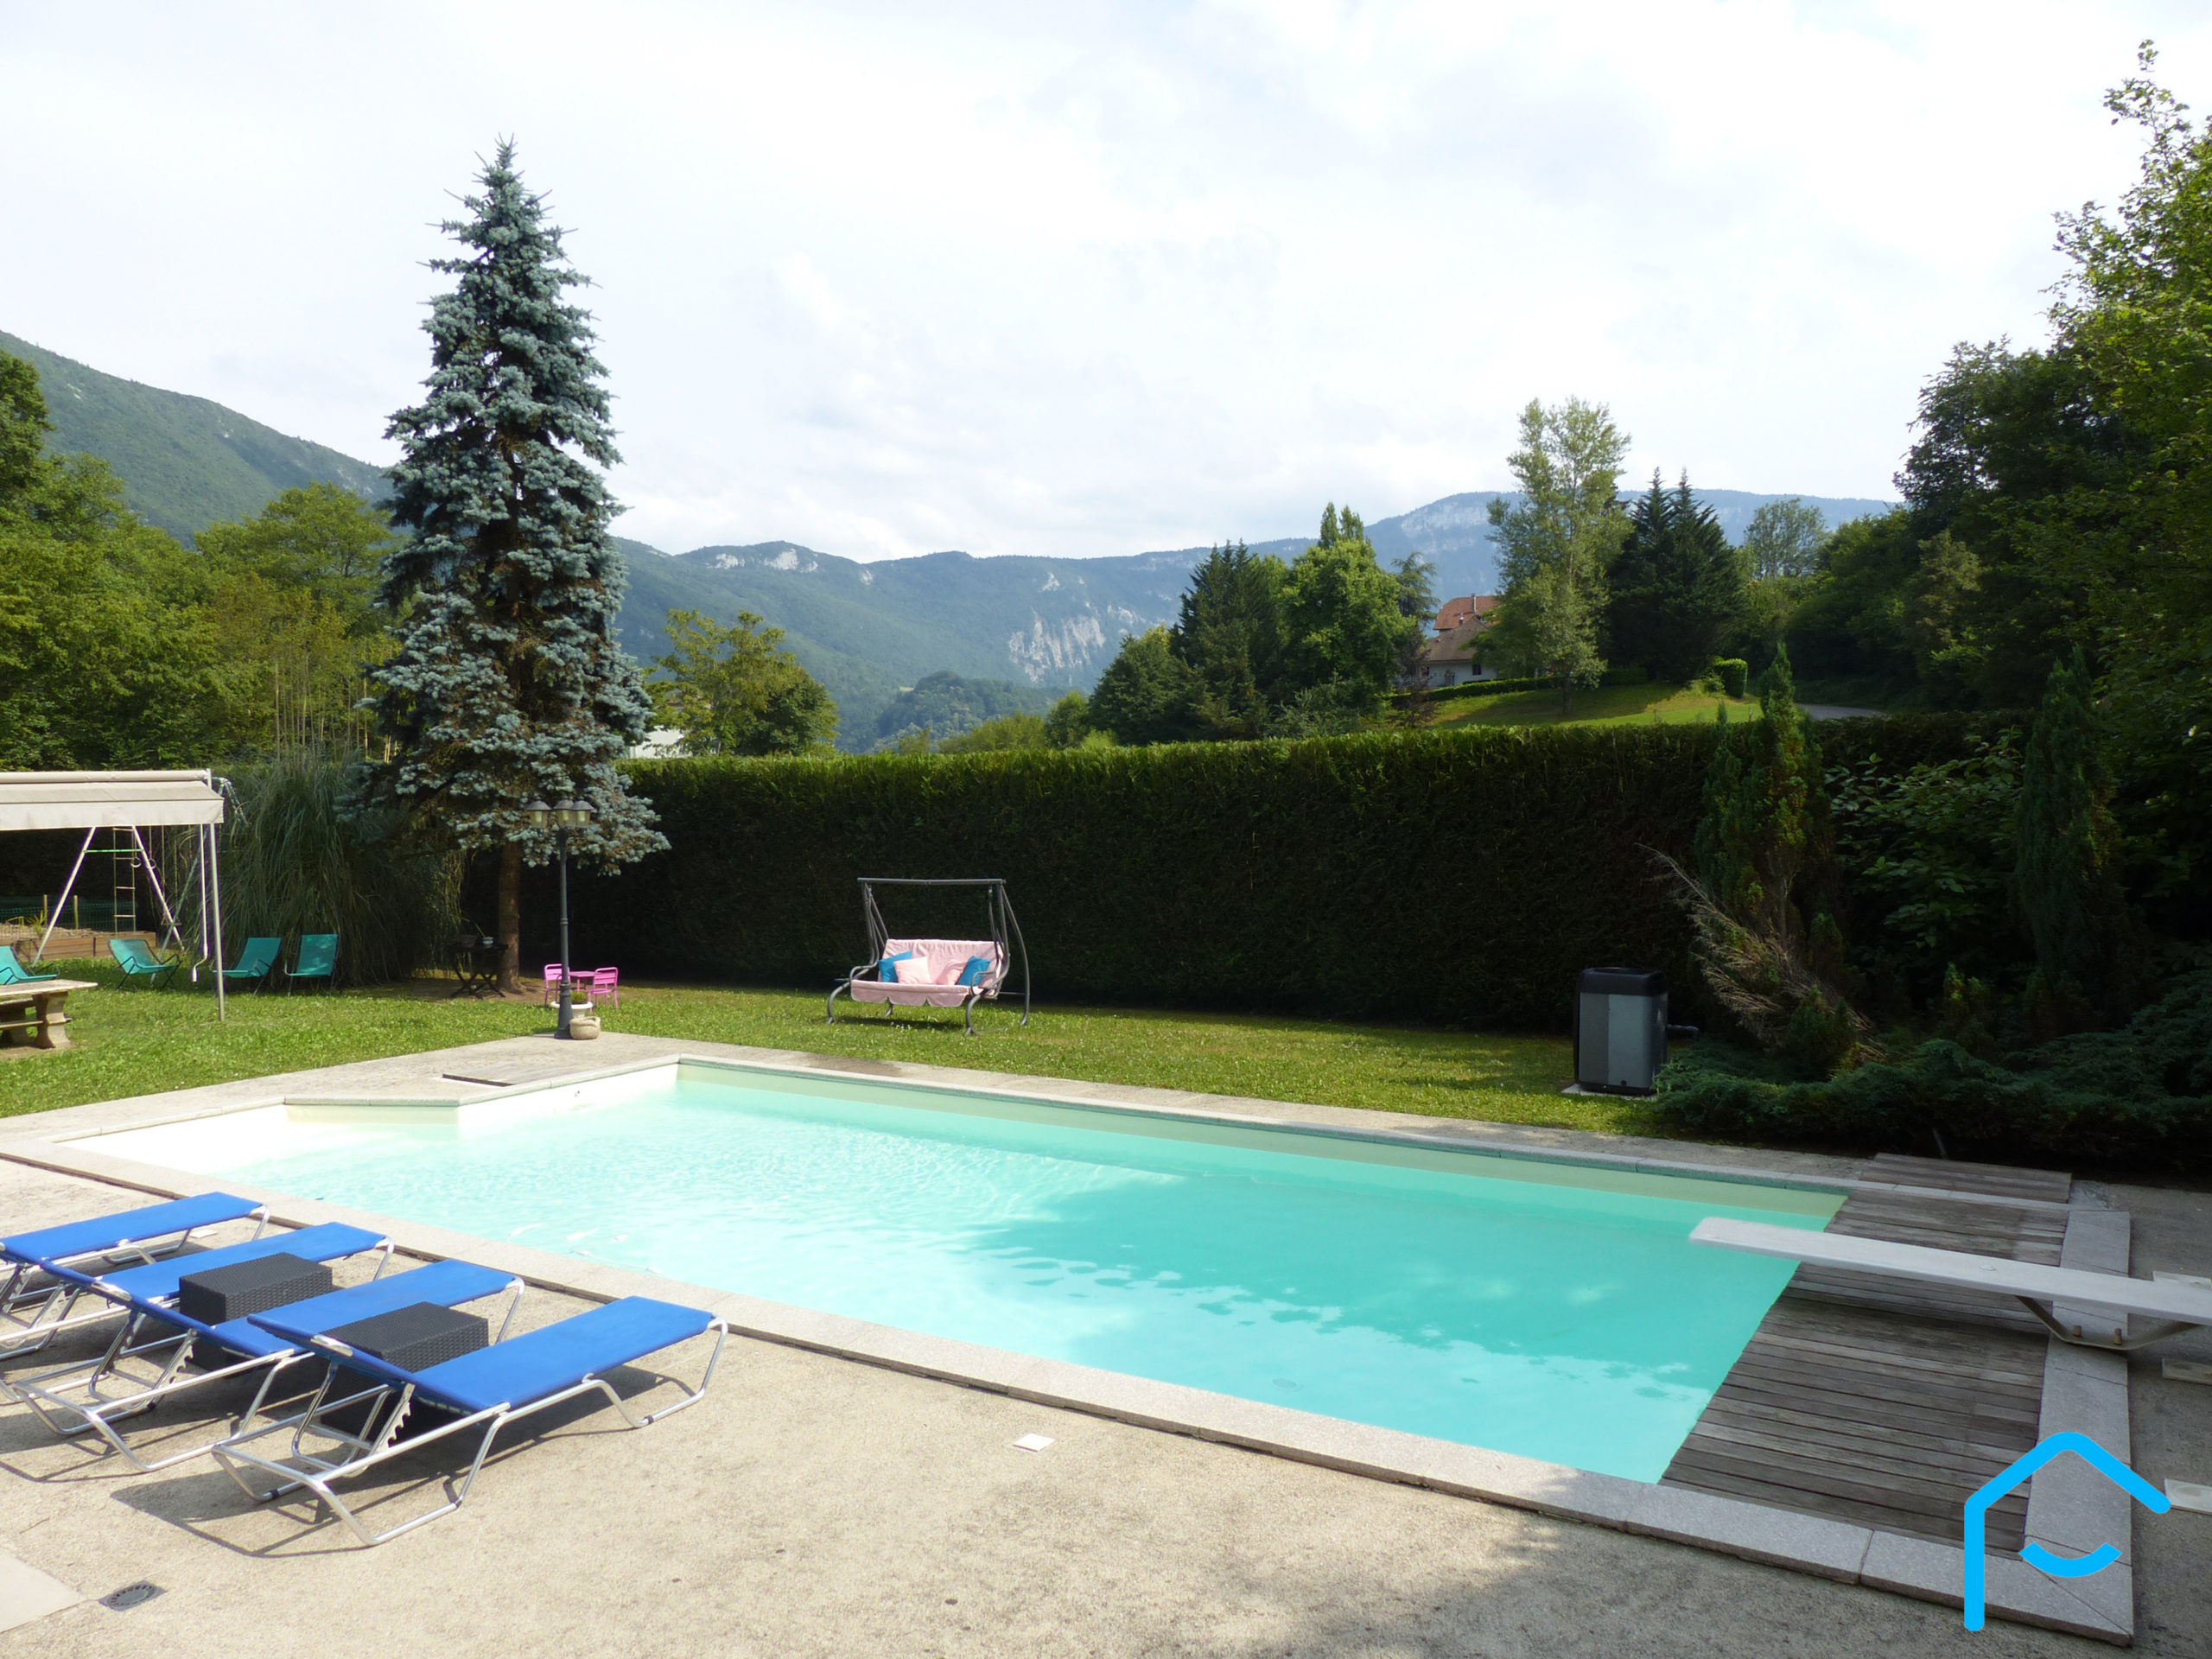 A vendre Savoie maison avec piscine terrain lac Aiguebelette vue 4